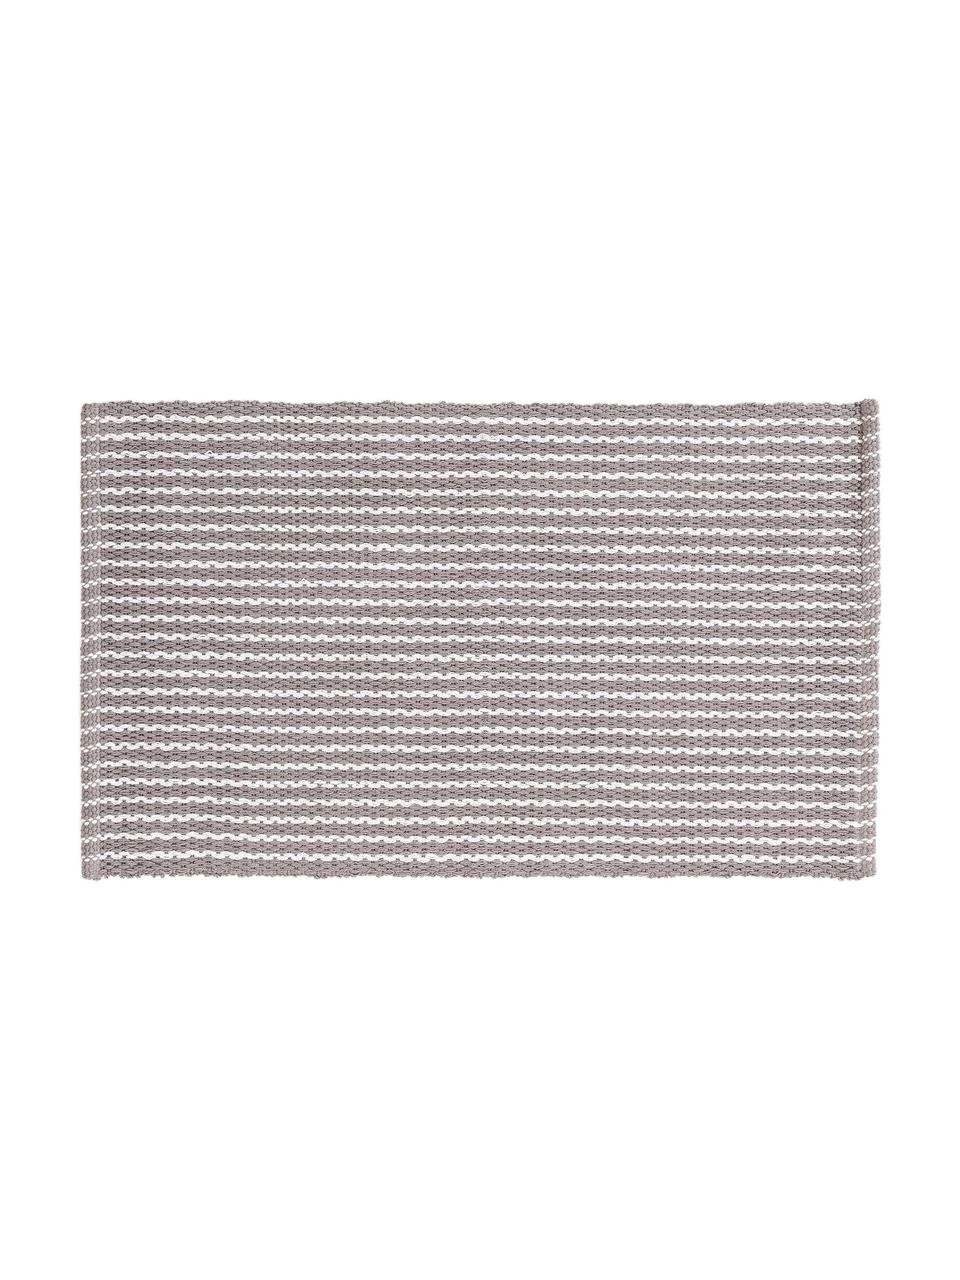 Gestreifter Badvorleger Bono in Grau/Weiß, 100% Baumwolle, Grau, Weiß, B 50 x L 80 cm